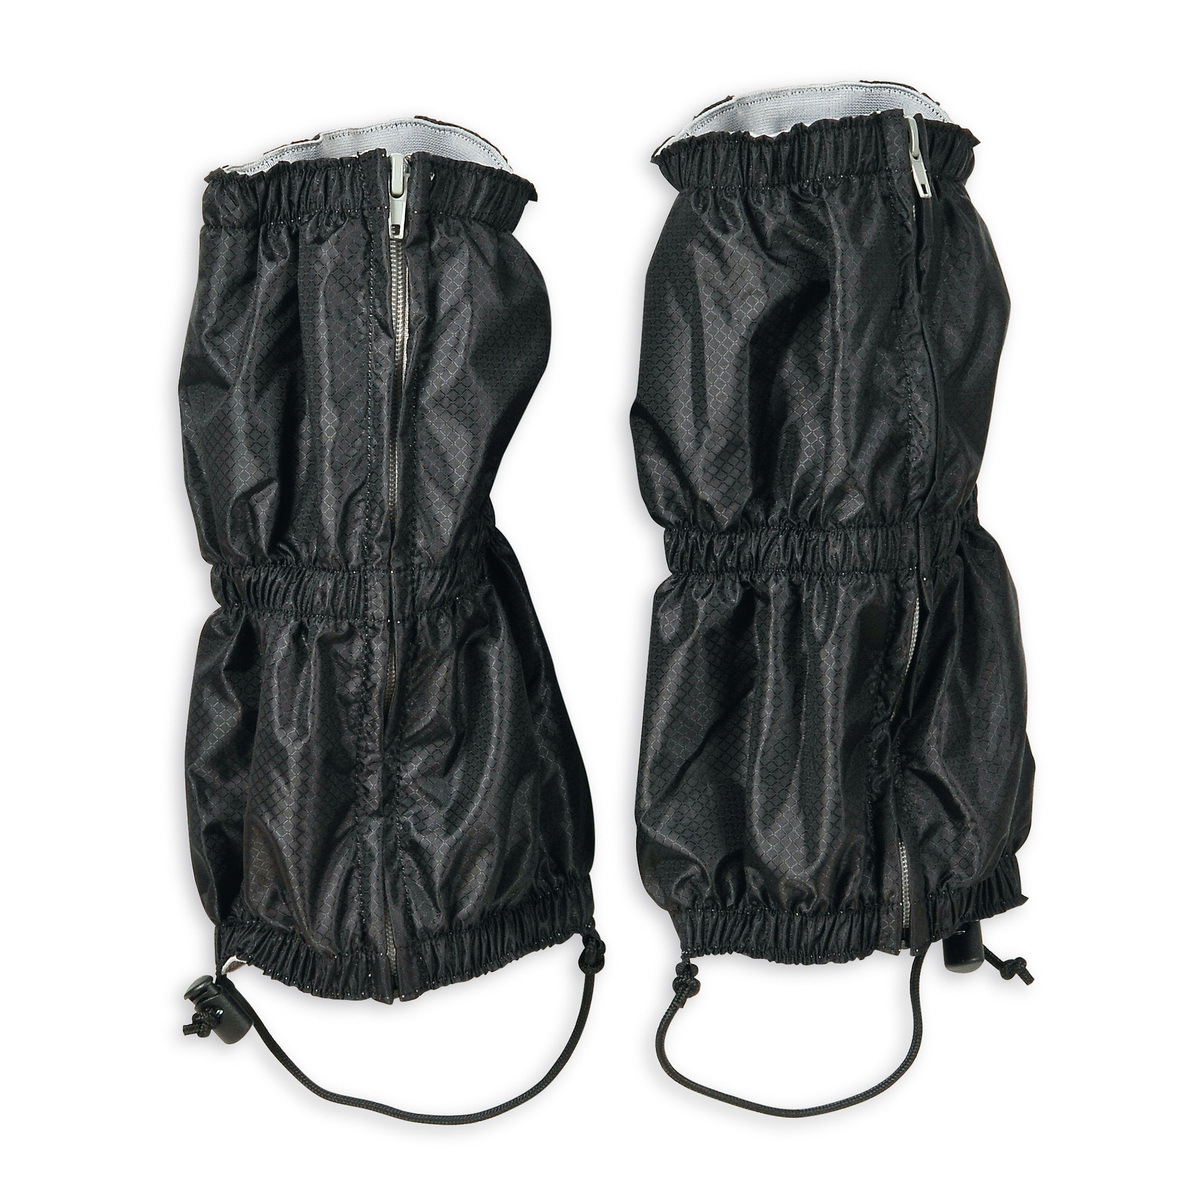 Gaiters - Gaiter Ripstop short light - Tatonka | Backpacks, Tents ...